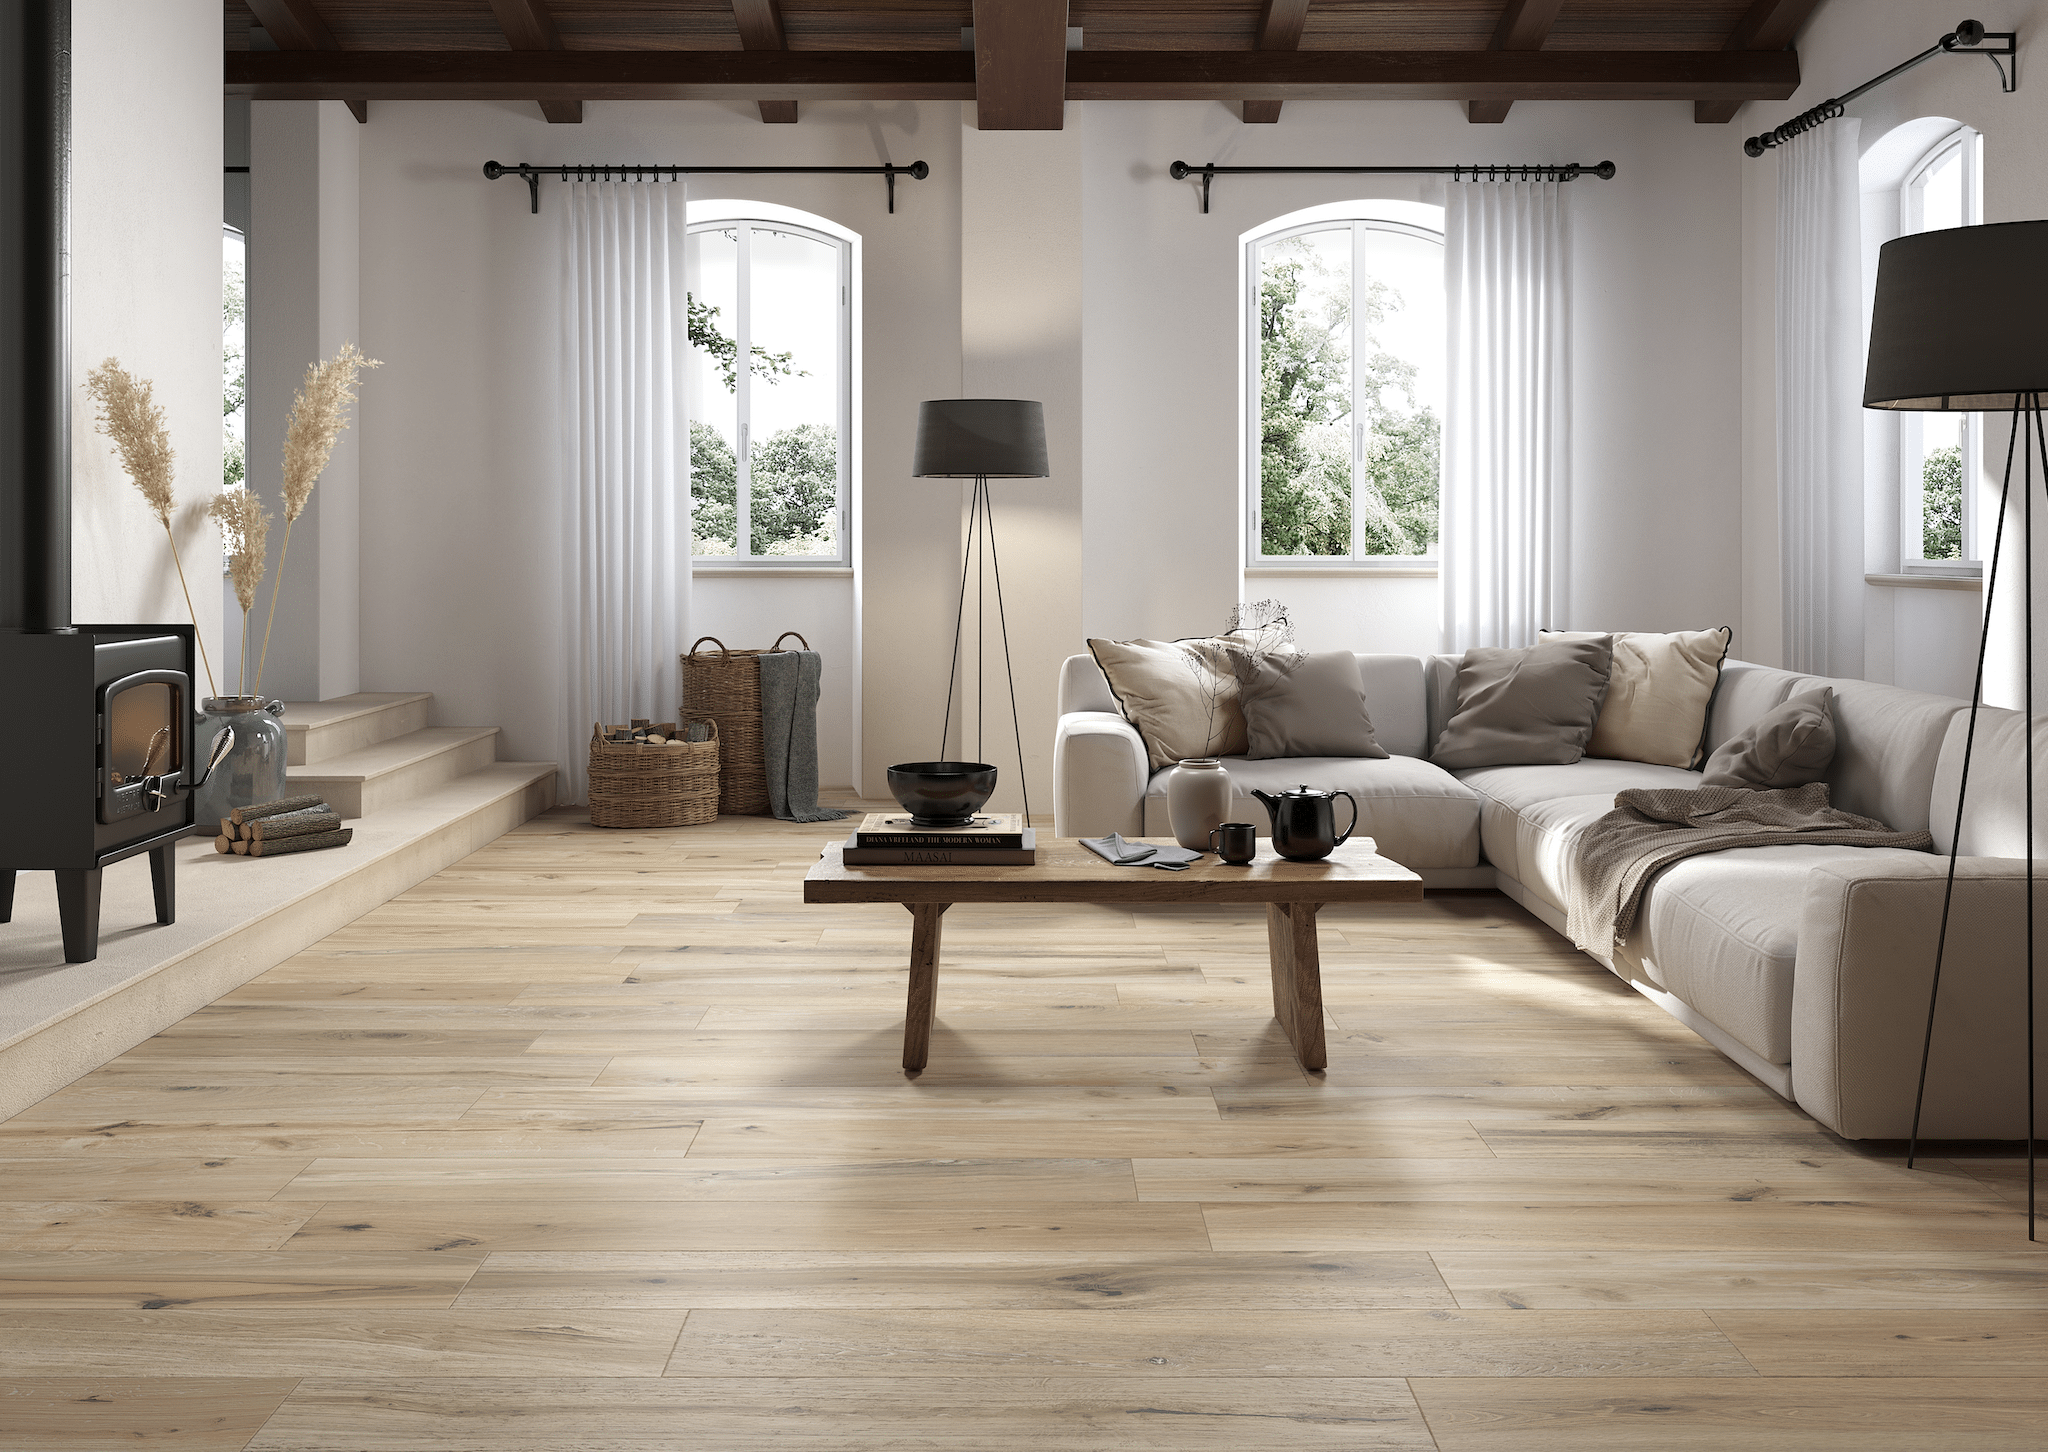 Fliesendorf zeigt ein sehr klassisches Wohnzimmer in beige, L-Couch mit verschiedenen Polstern, hohen,weißen Vorhängen, Couchtisch aus Holz und Fliesendielen im Holzlook.